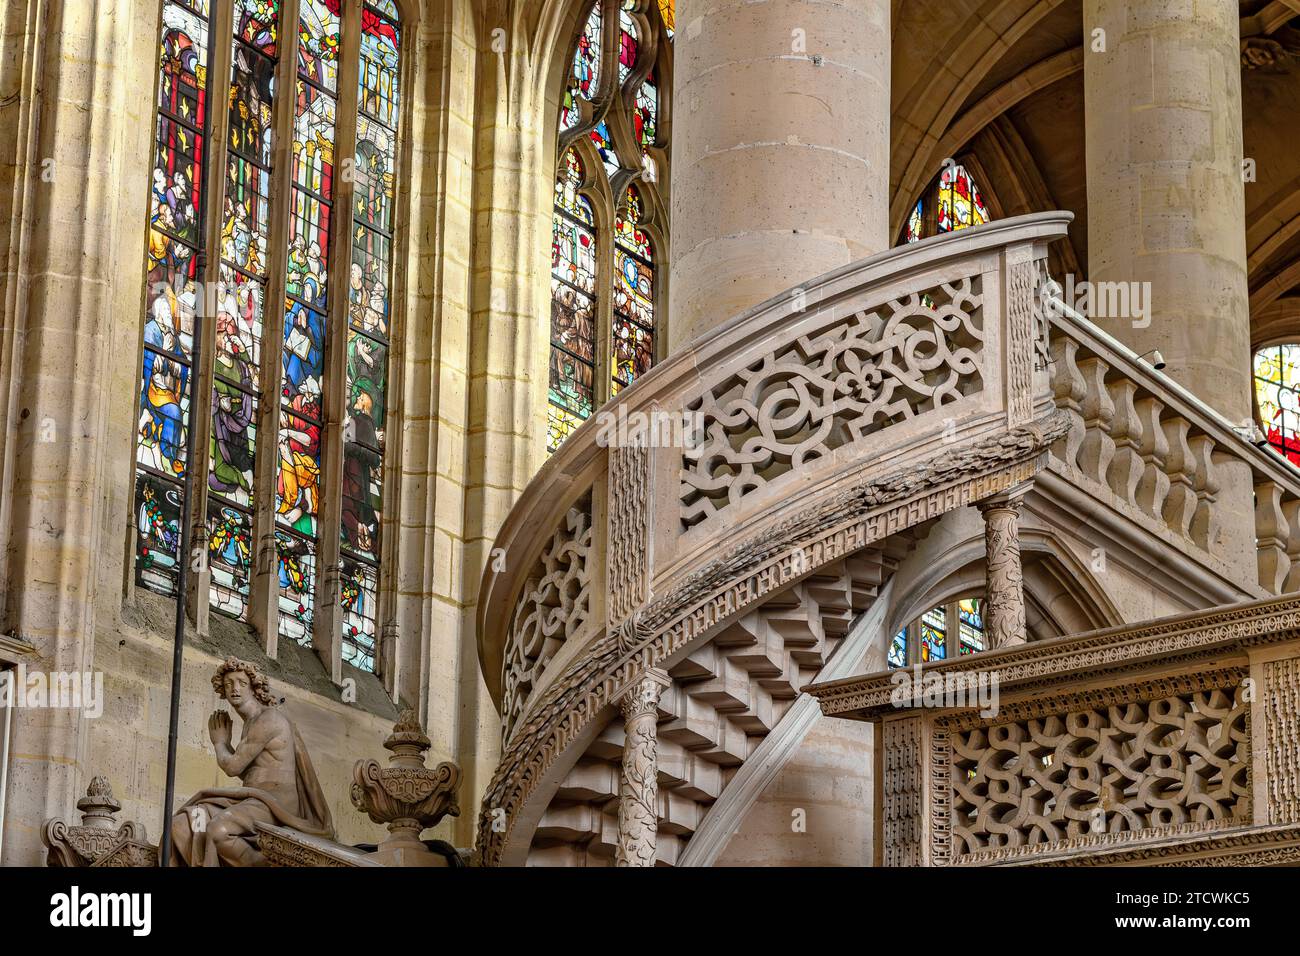 Le jubé de pierre sculpté élaboré, ou écran de toit à l'intérieur de l'église Saint-Étienne-du-Mont, l'une des plus belles églises de Paris, France Banque D'Images